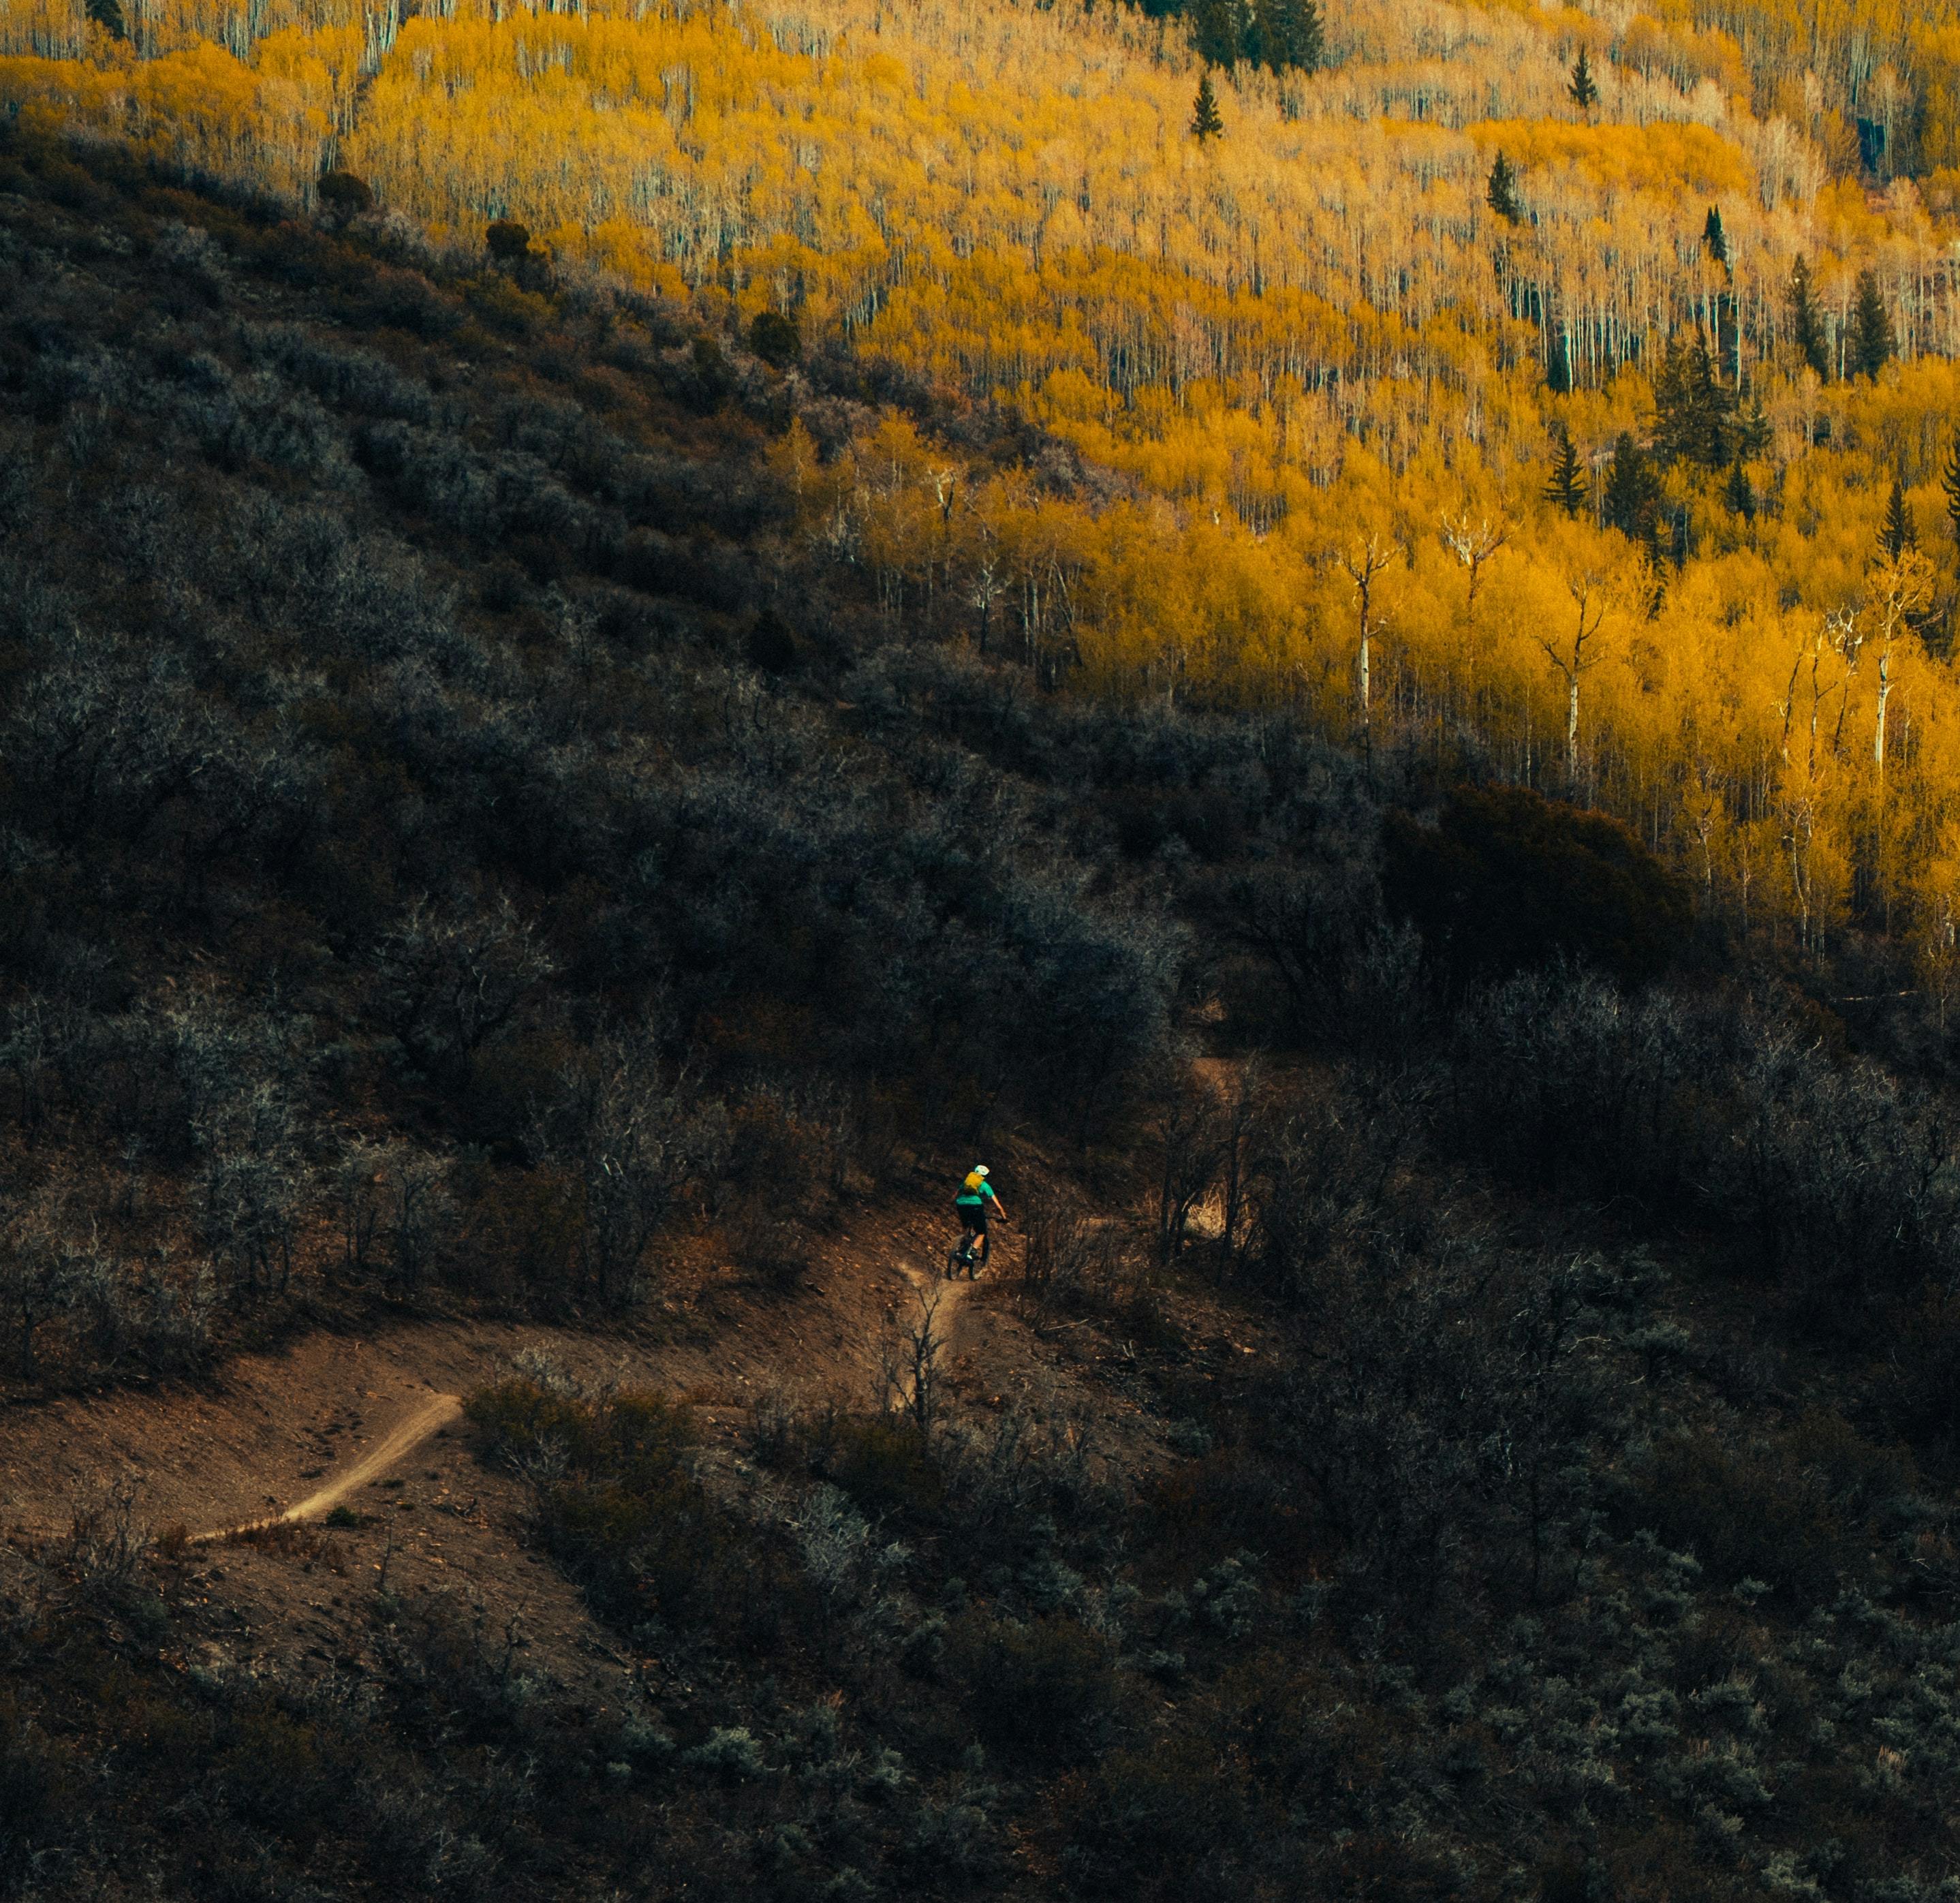 Someone rides a mountain bike down a narrow trail through yellow trees. 